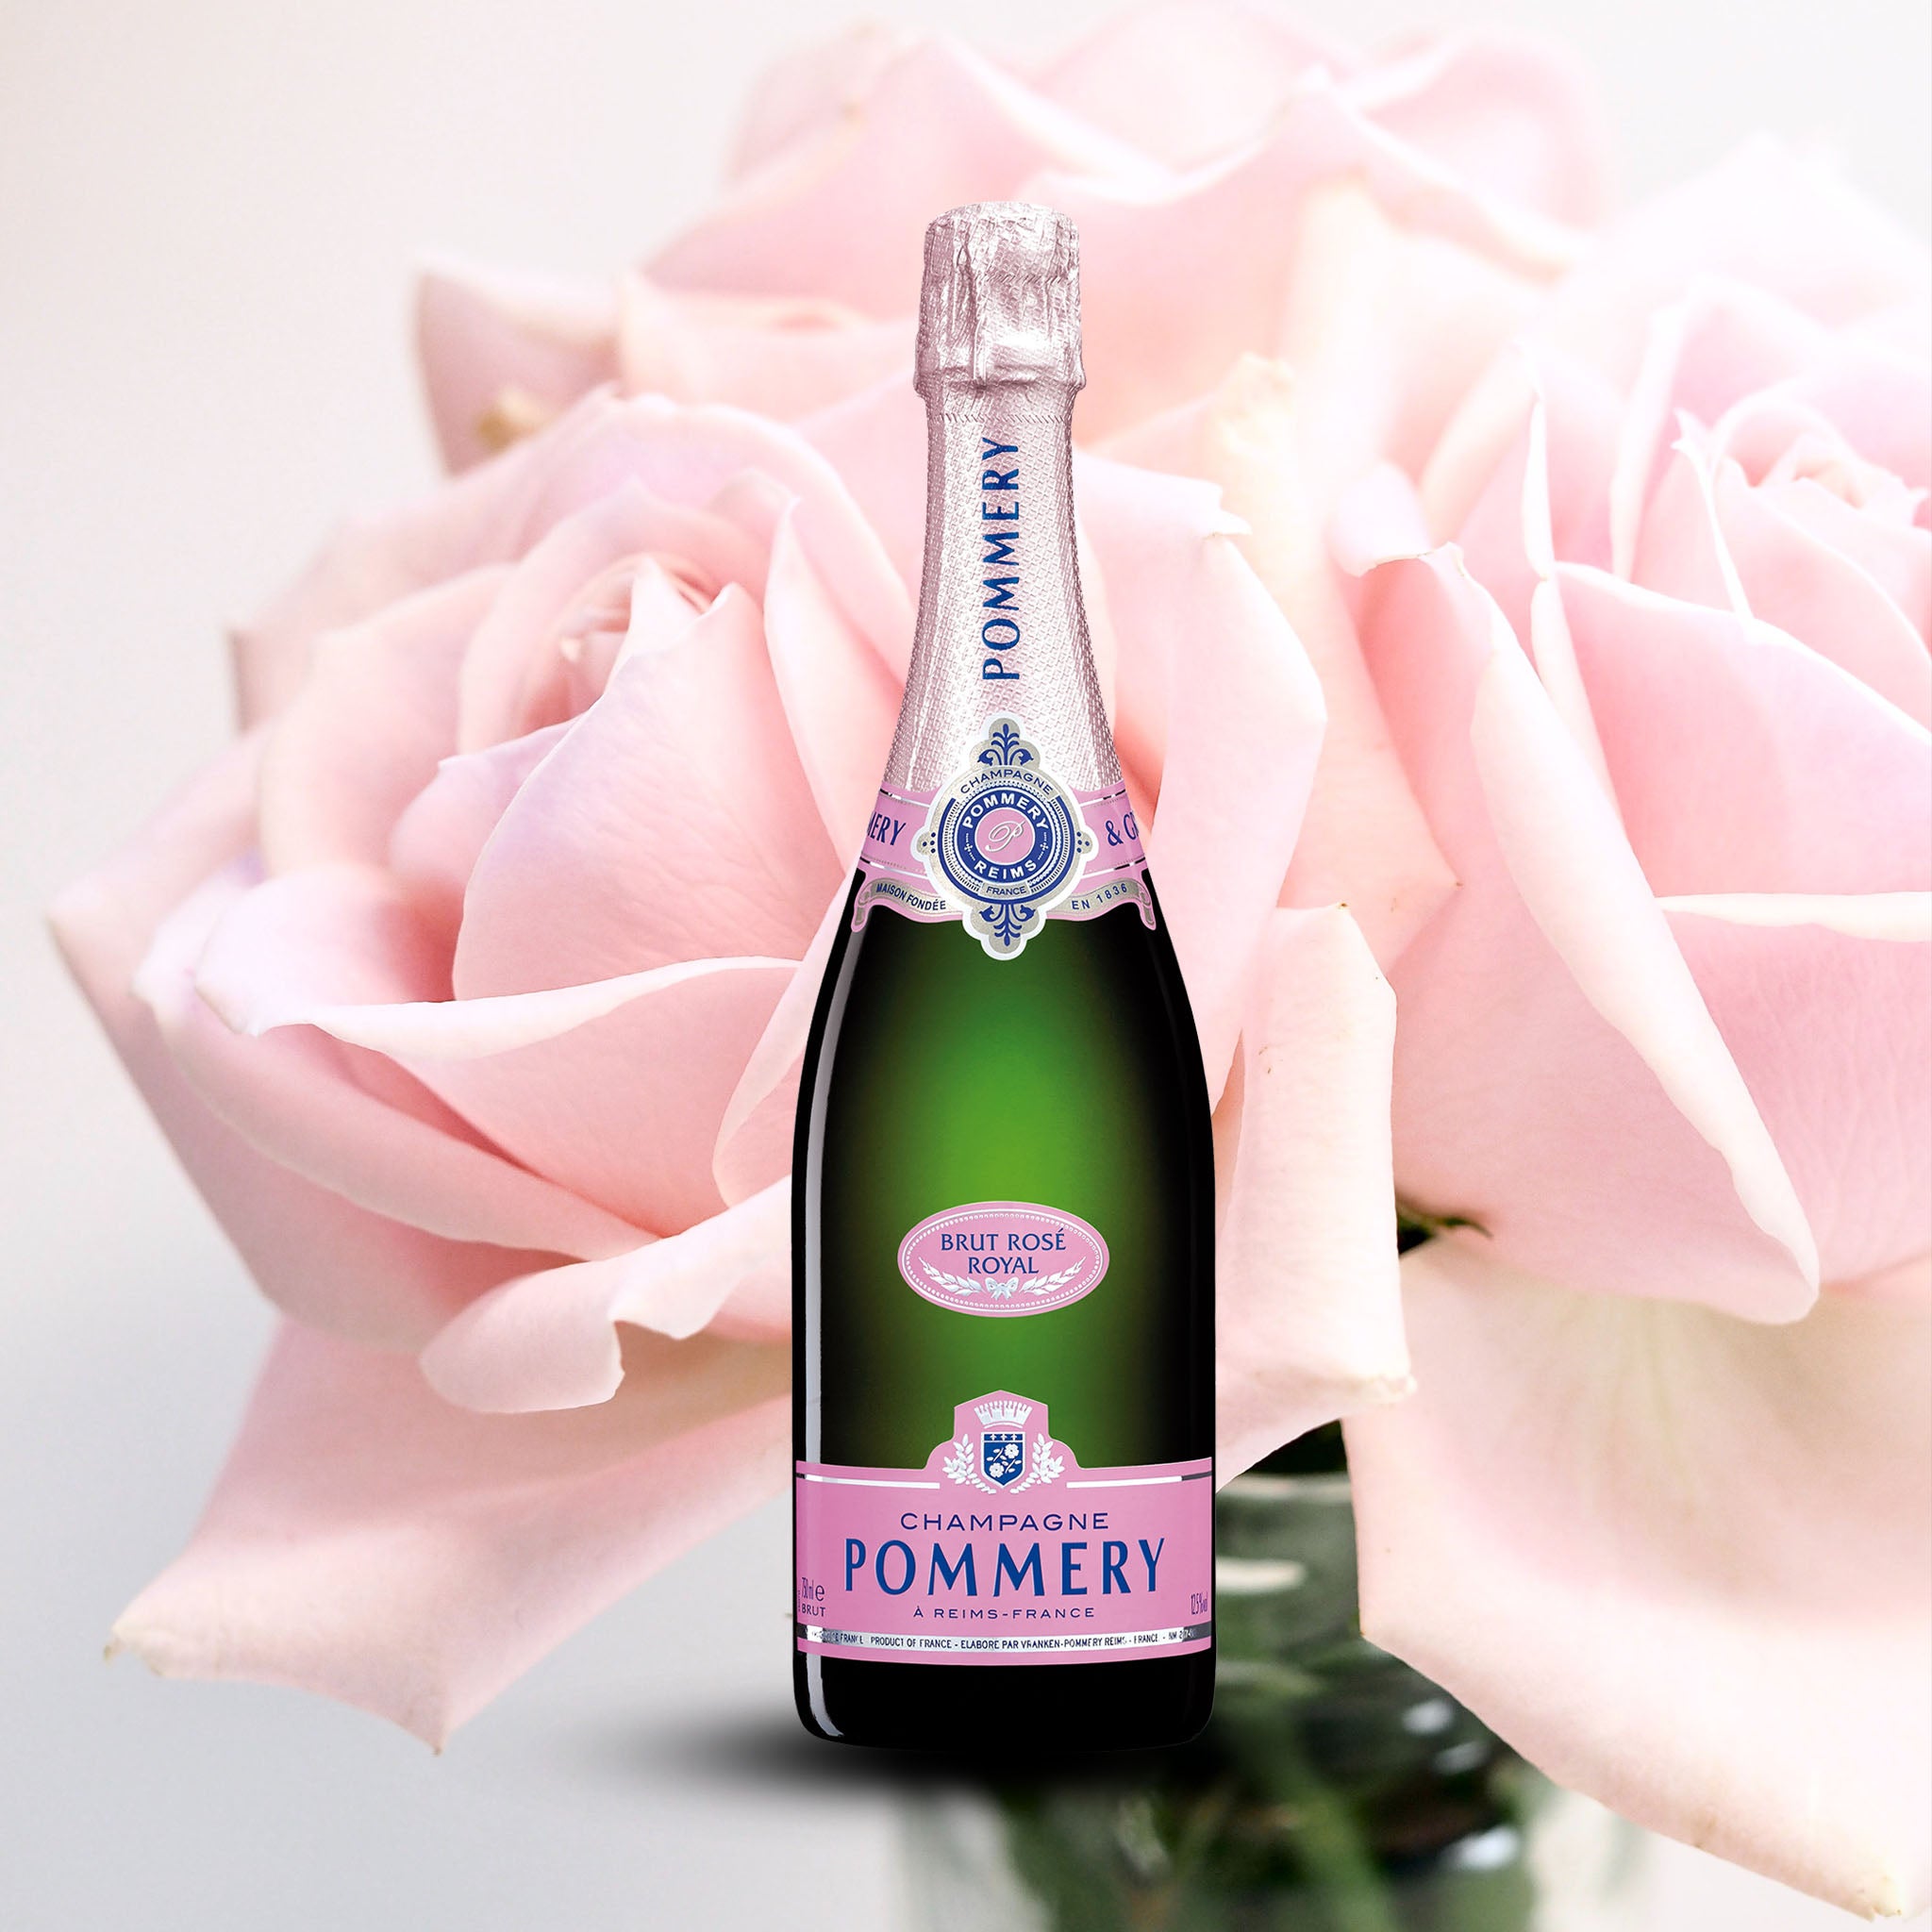 Champagne Pommery, Brut Rose NV